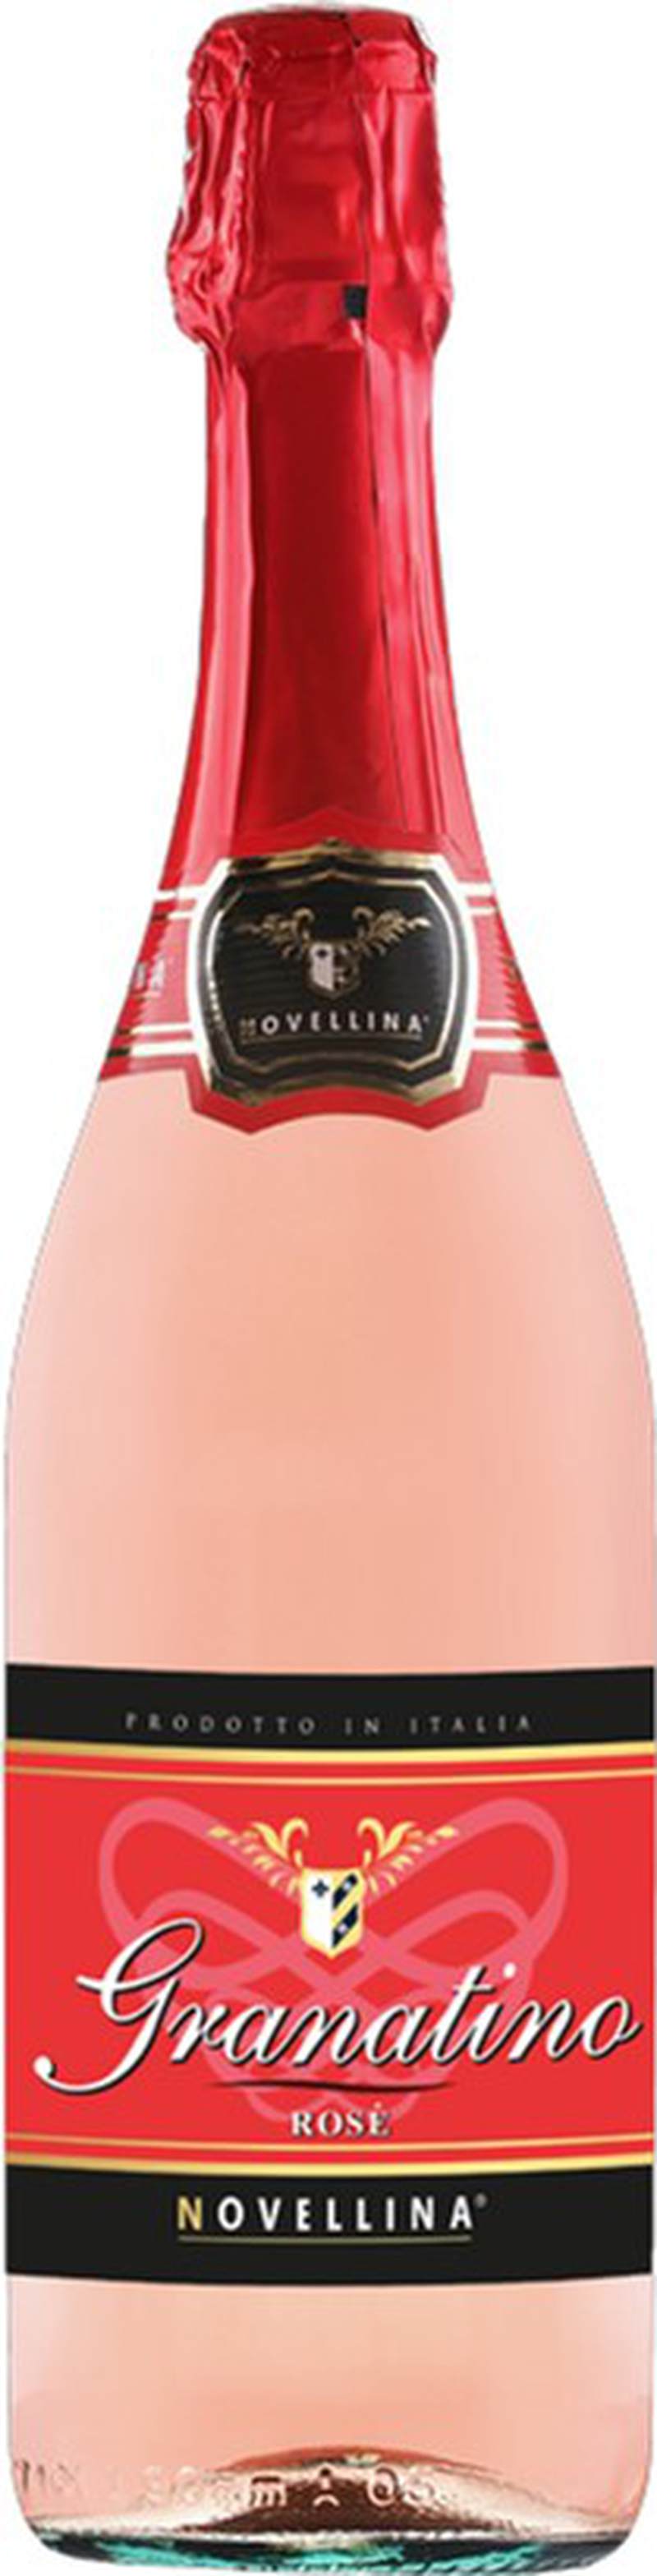 Вино ігр Новелліна Гранатіно розе 0,75л